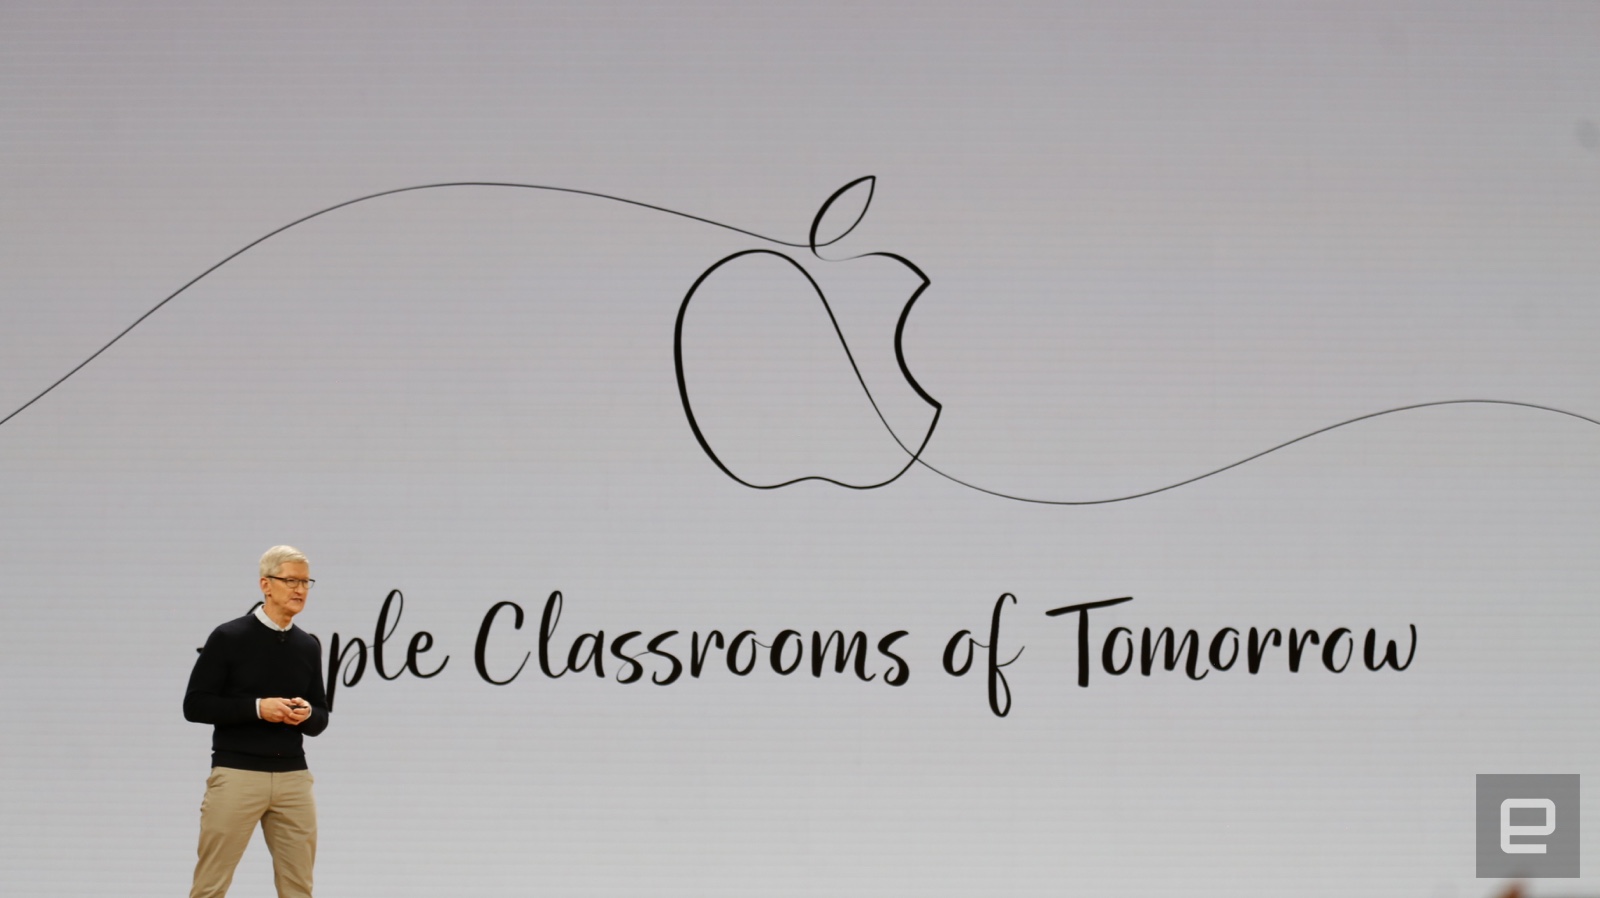 Tổng hợp sự kiện về giáo dục của Apple: Ra mắt iPad giá rẻ và loạt ứng dụng AR hỗ trợ học tập